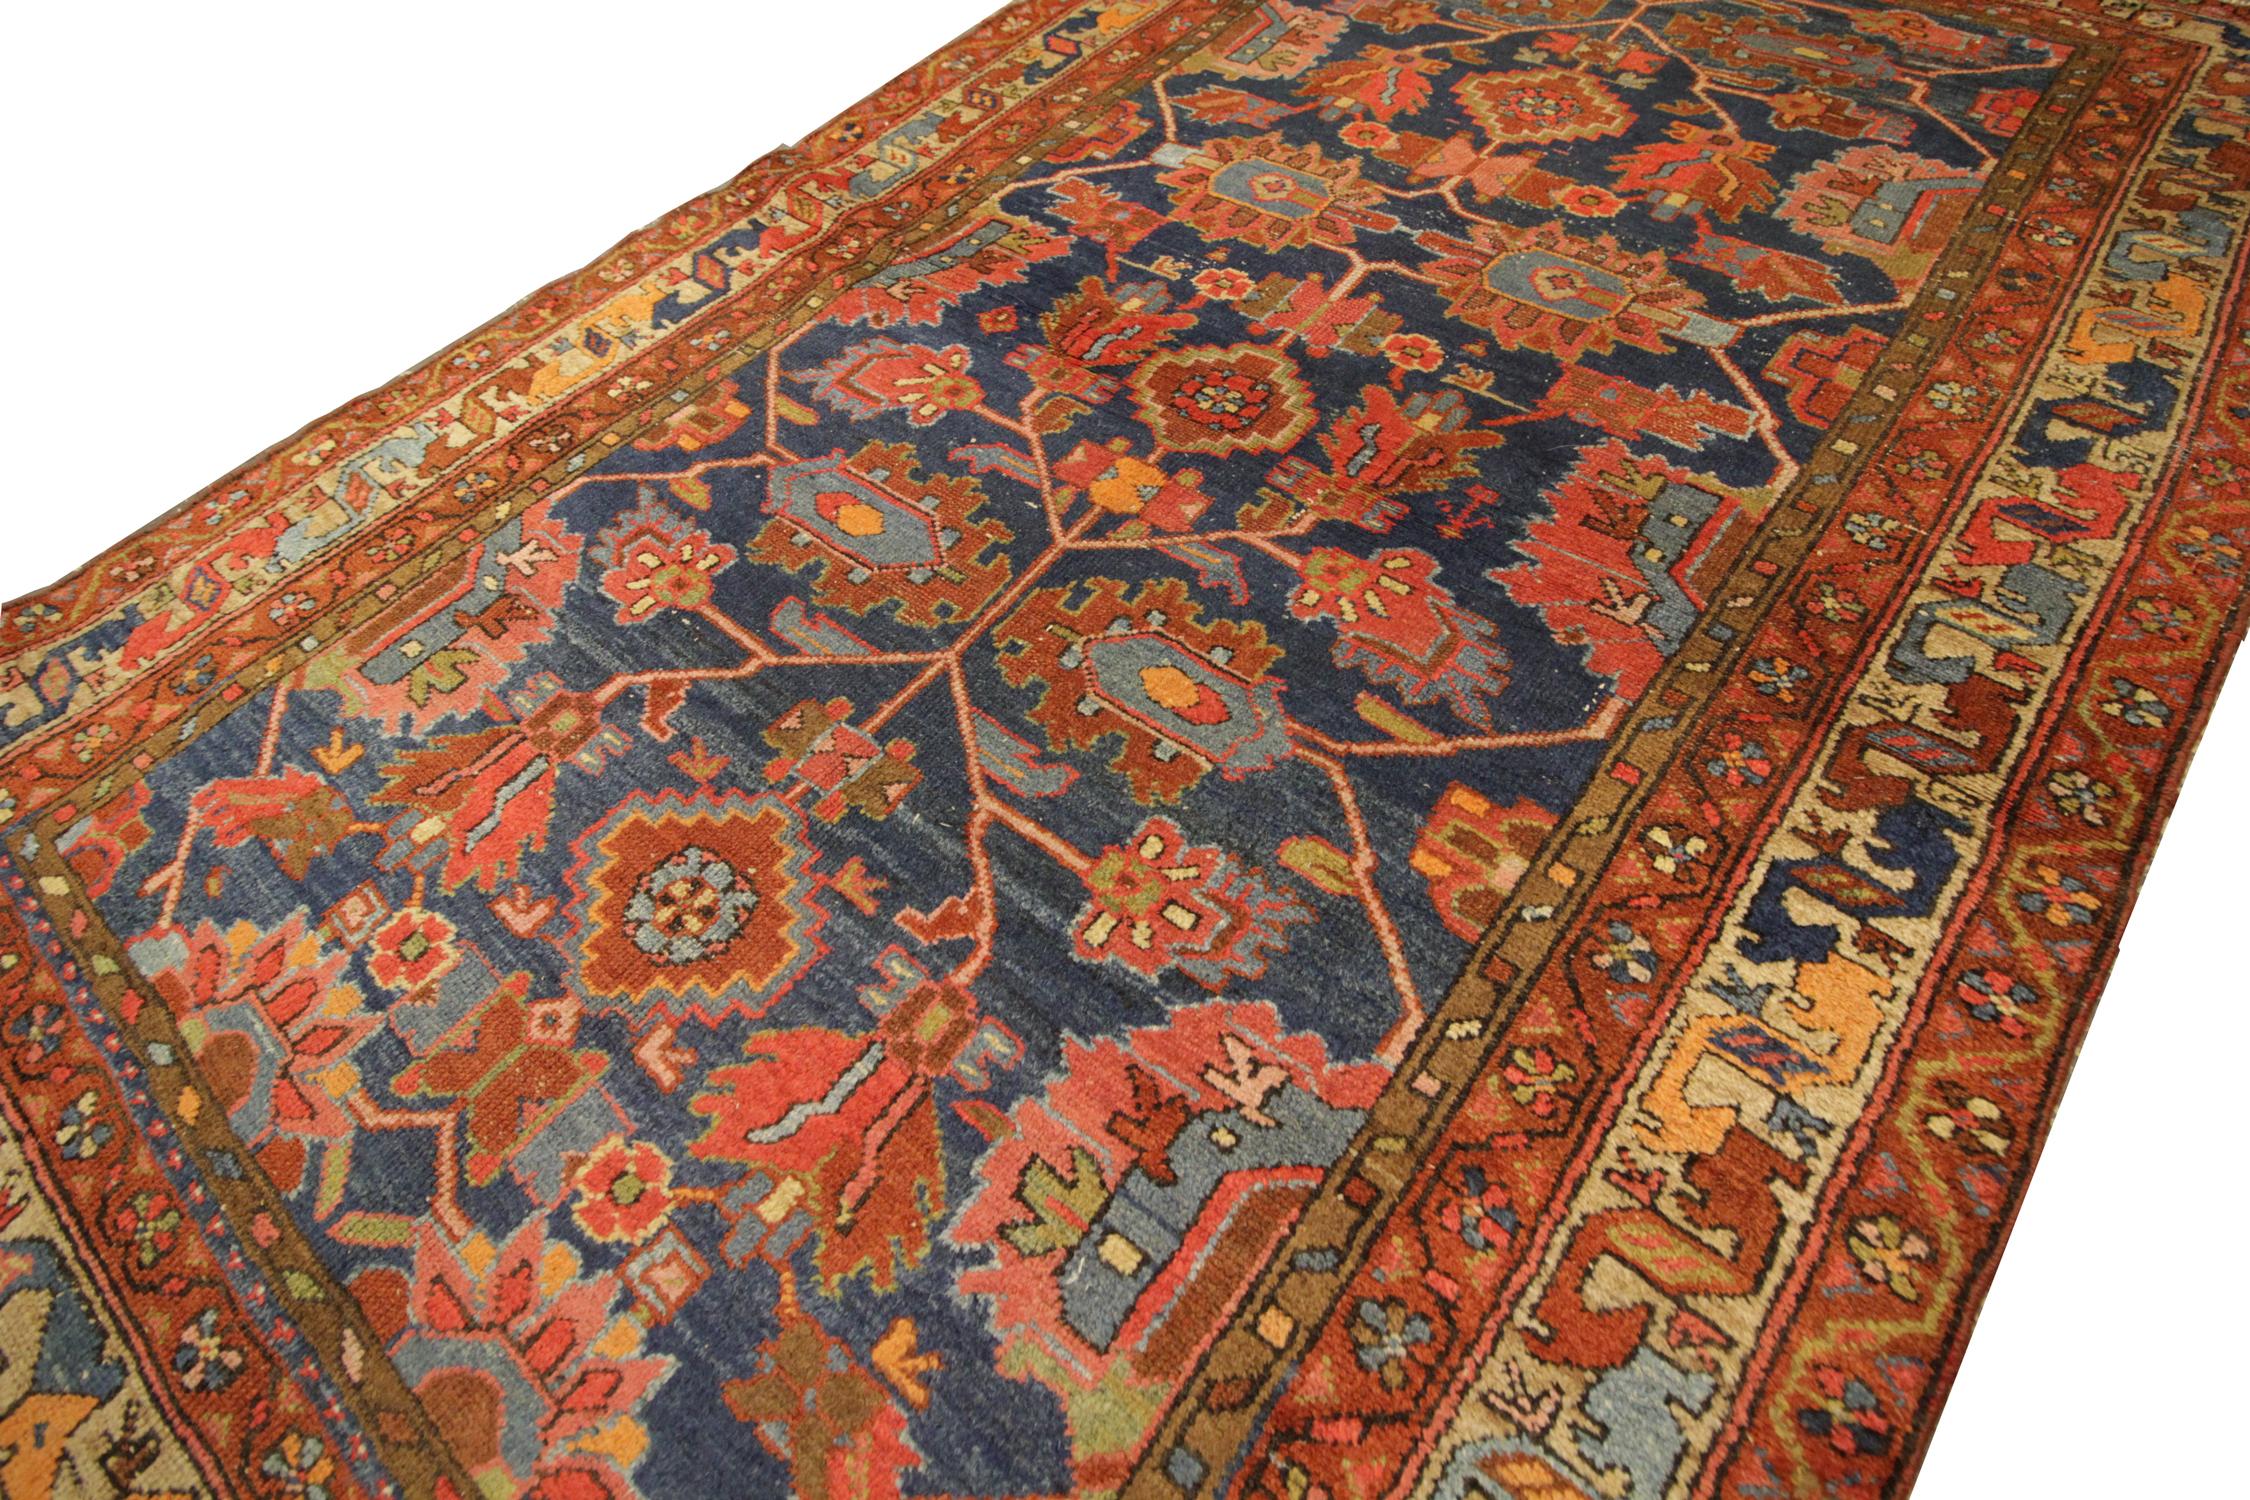 Dieser antike Farhan-Teppich wurde von Hand gewebt und ist in schönen roten und blauen Farben gehalten. Dieser Teppich zeichnet sich durch ein florales, symmetrisches Tribal-Motiv aus. Der tiefblaue Hintergrund kontrastiert wunderschön mit dem